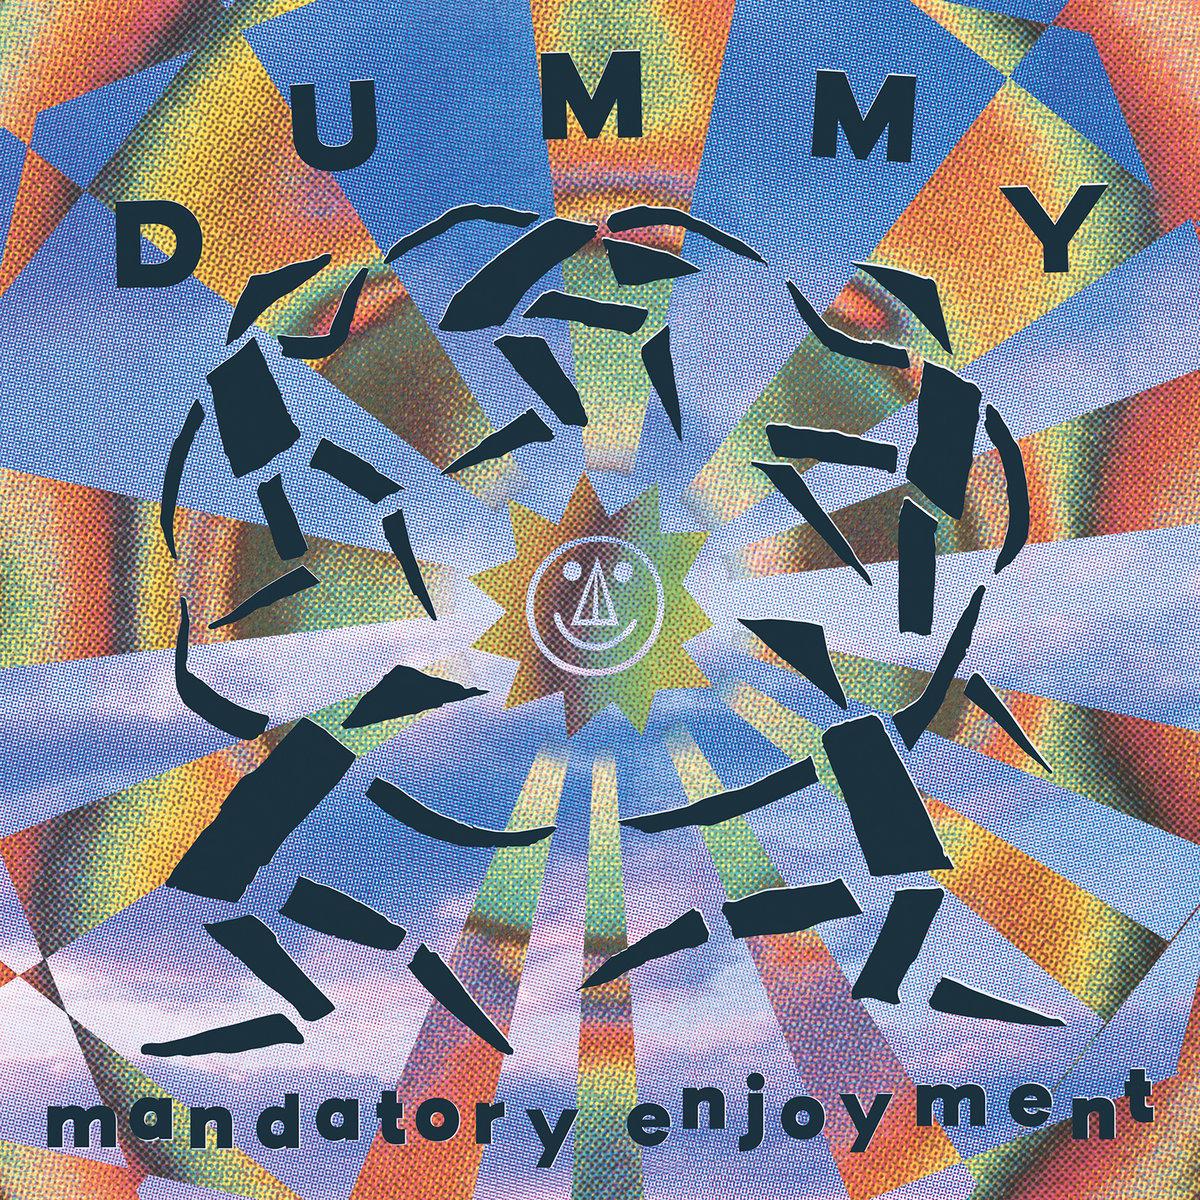 DUMMY - MANDATORY ENJOYMENT Vinyl LP